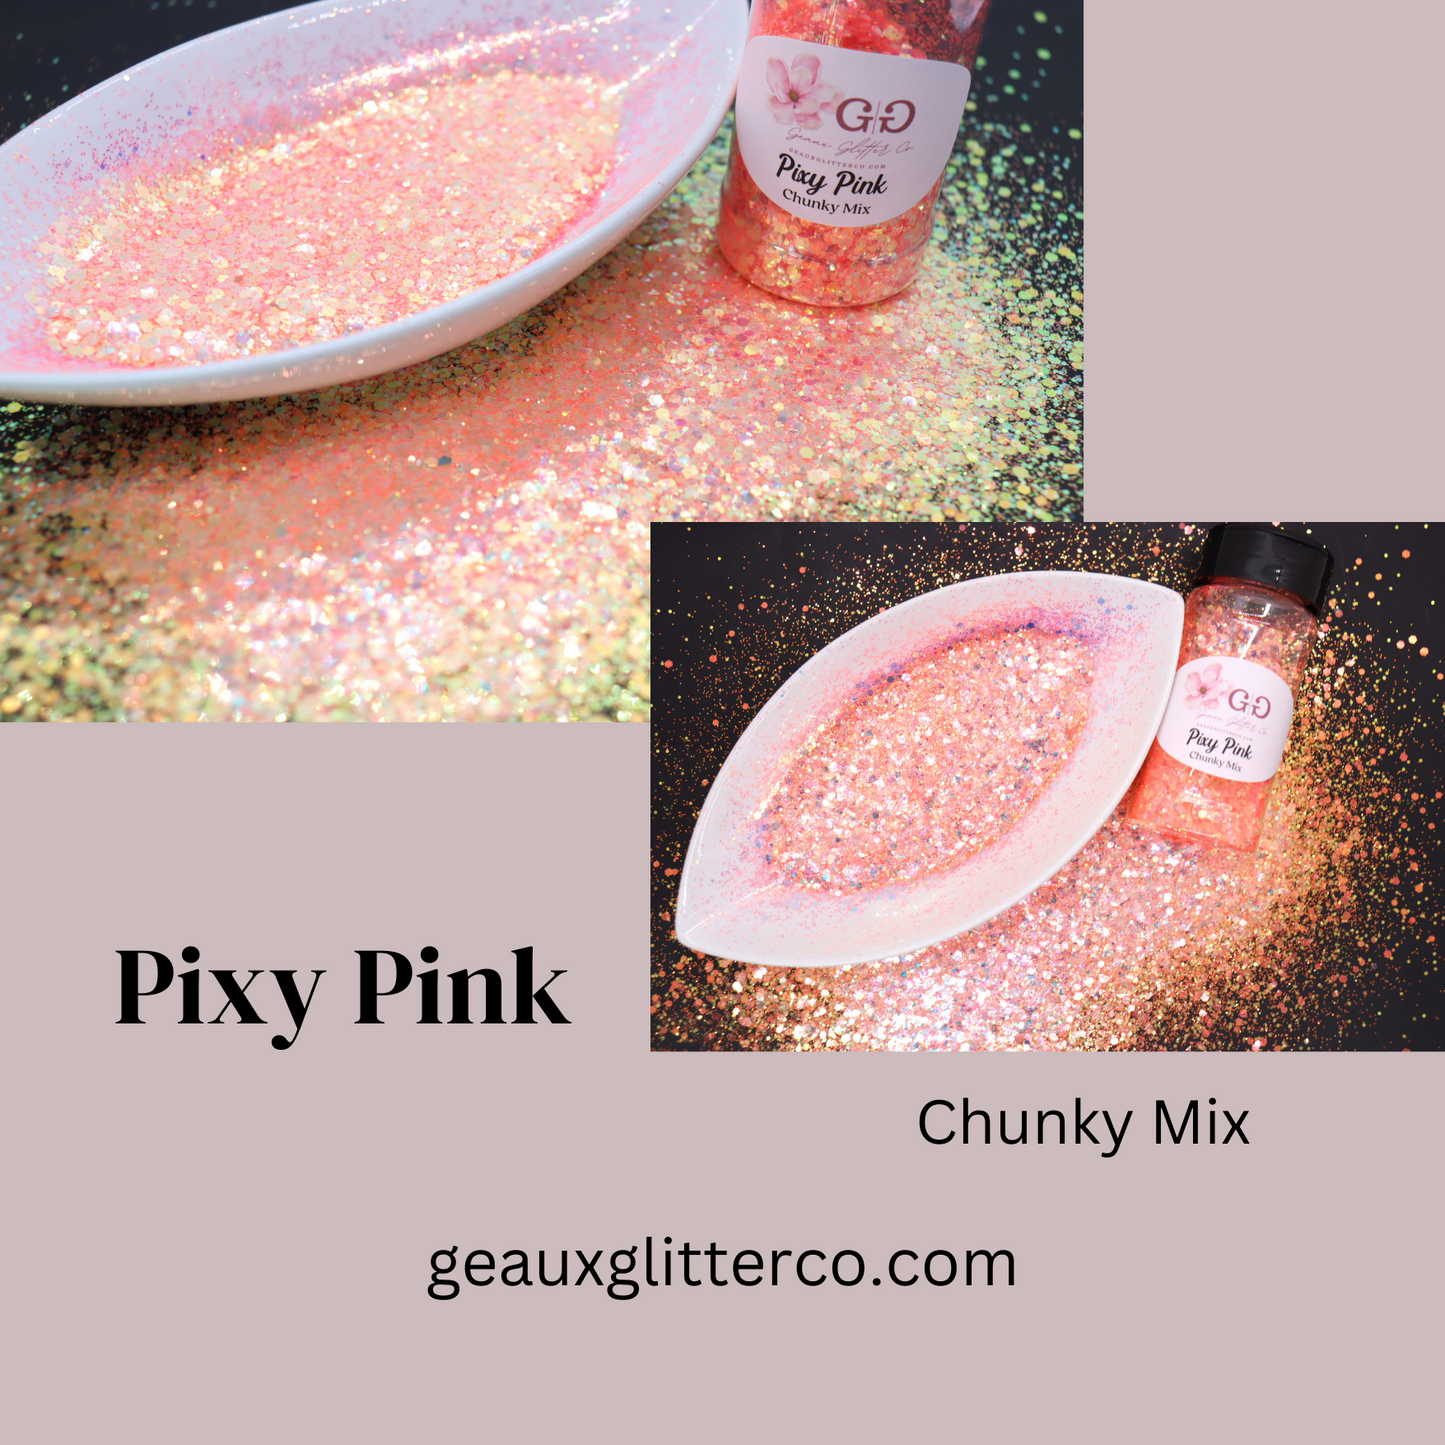 Pixy Pink Chunky Mix